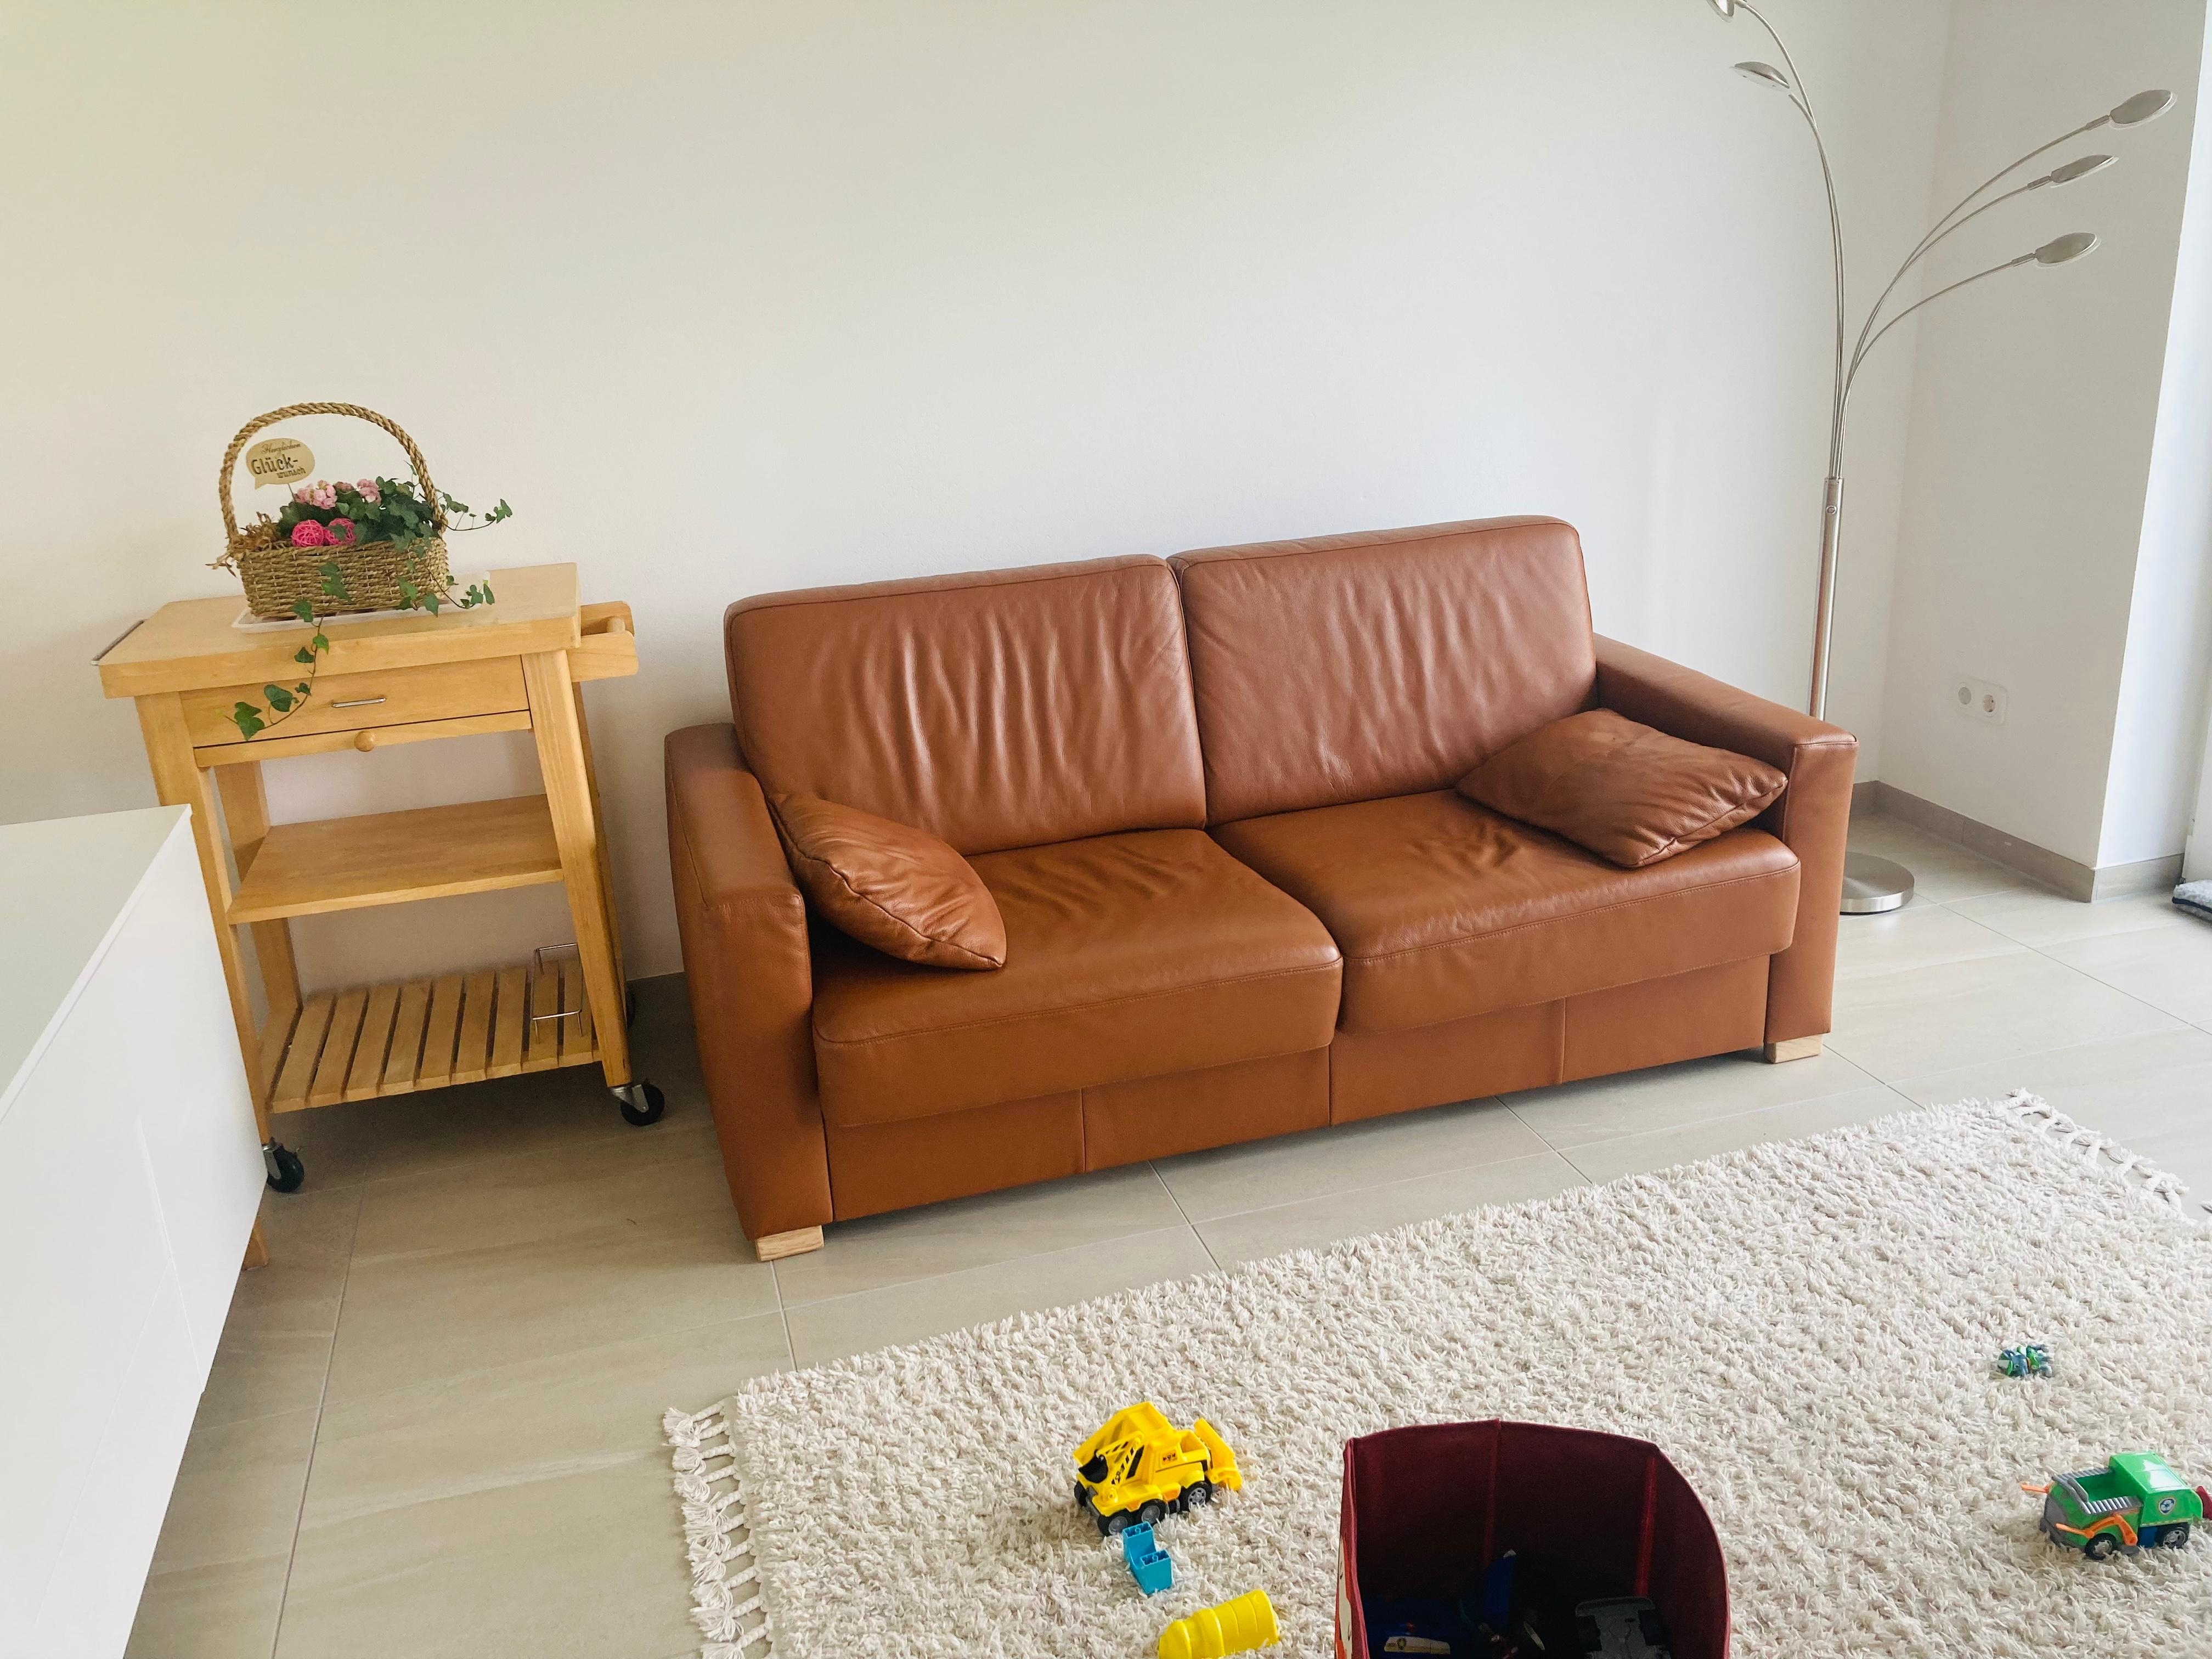 #wohnzimmerumstyling #interart #evabrenner 
Das Sofa mögen wir sehr. Es fehlt noch ein Teppich in einer frischen Farbe.